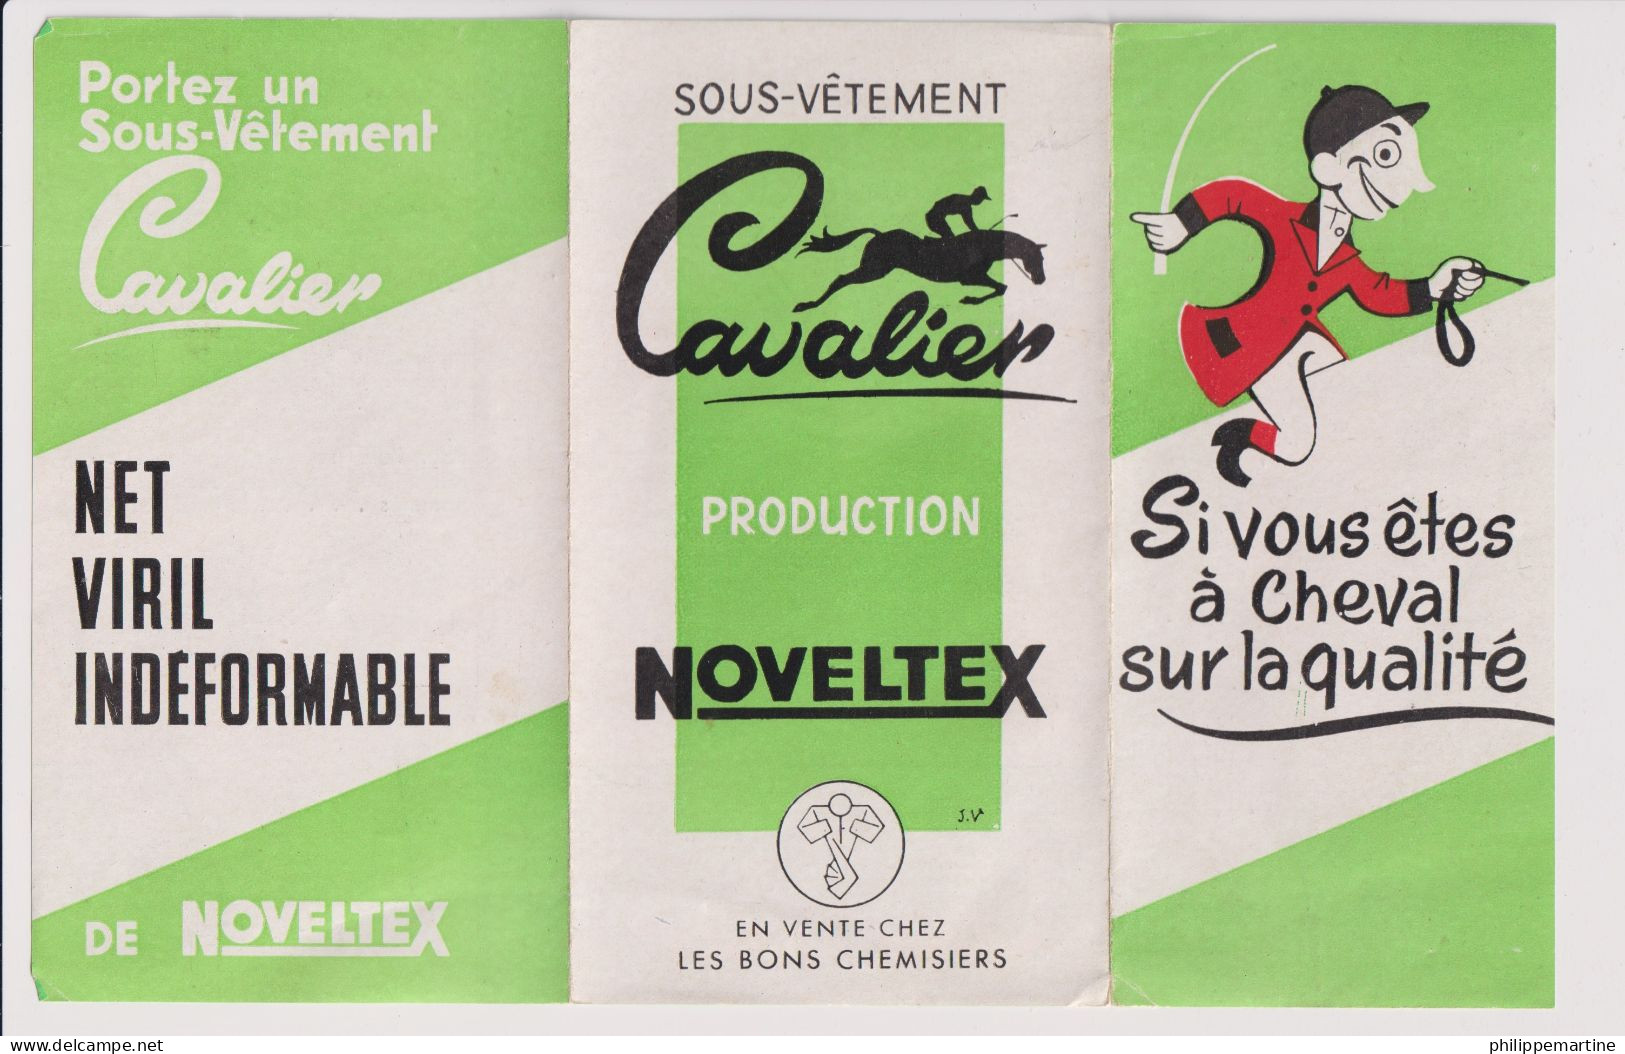 Dépliant Sous-vêtement Cavalier - Production Noveltex - Werbung